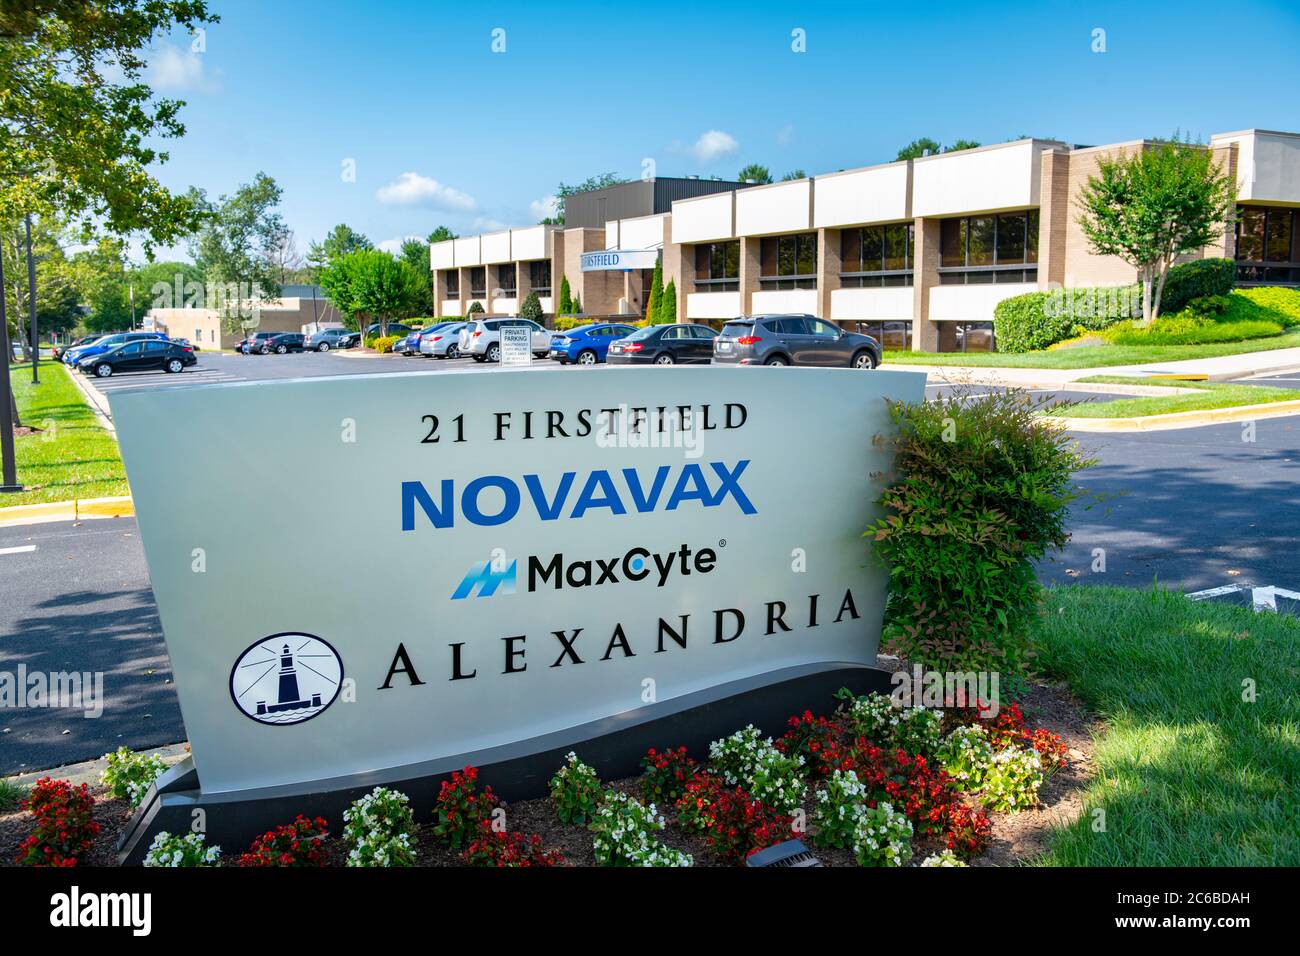 Le siège social de Novavax, UN fabricant de vaccins à Gaithersburg, Maryland, a reçu 1.6 milliards de dollars pour fabriquer un vaccin pour Covid-19 Banque D'Images